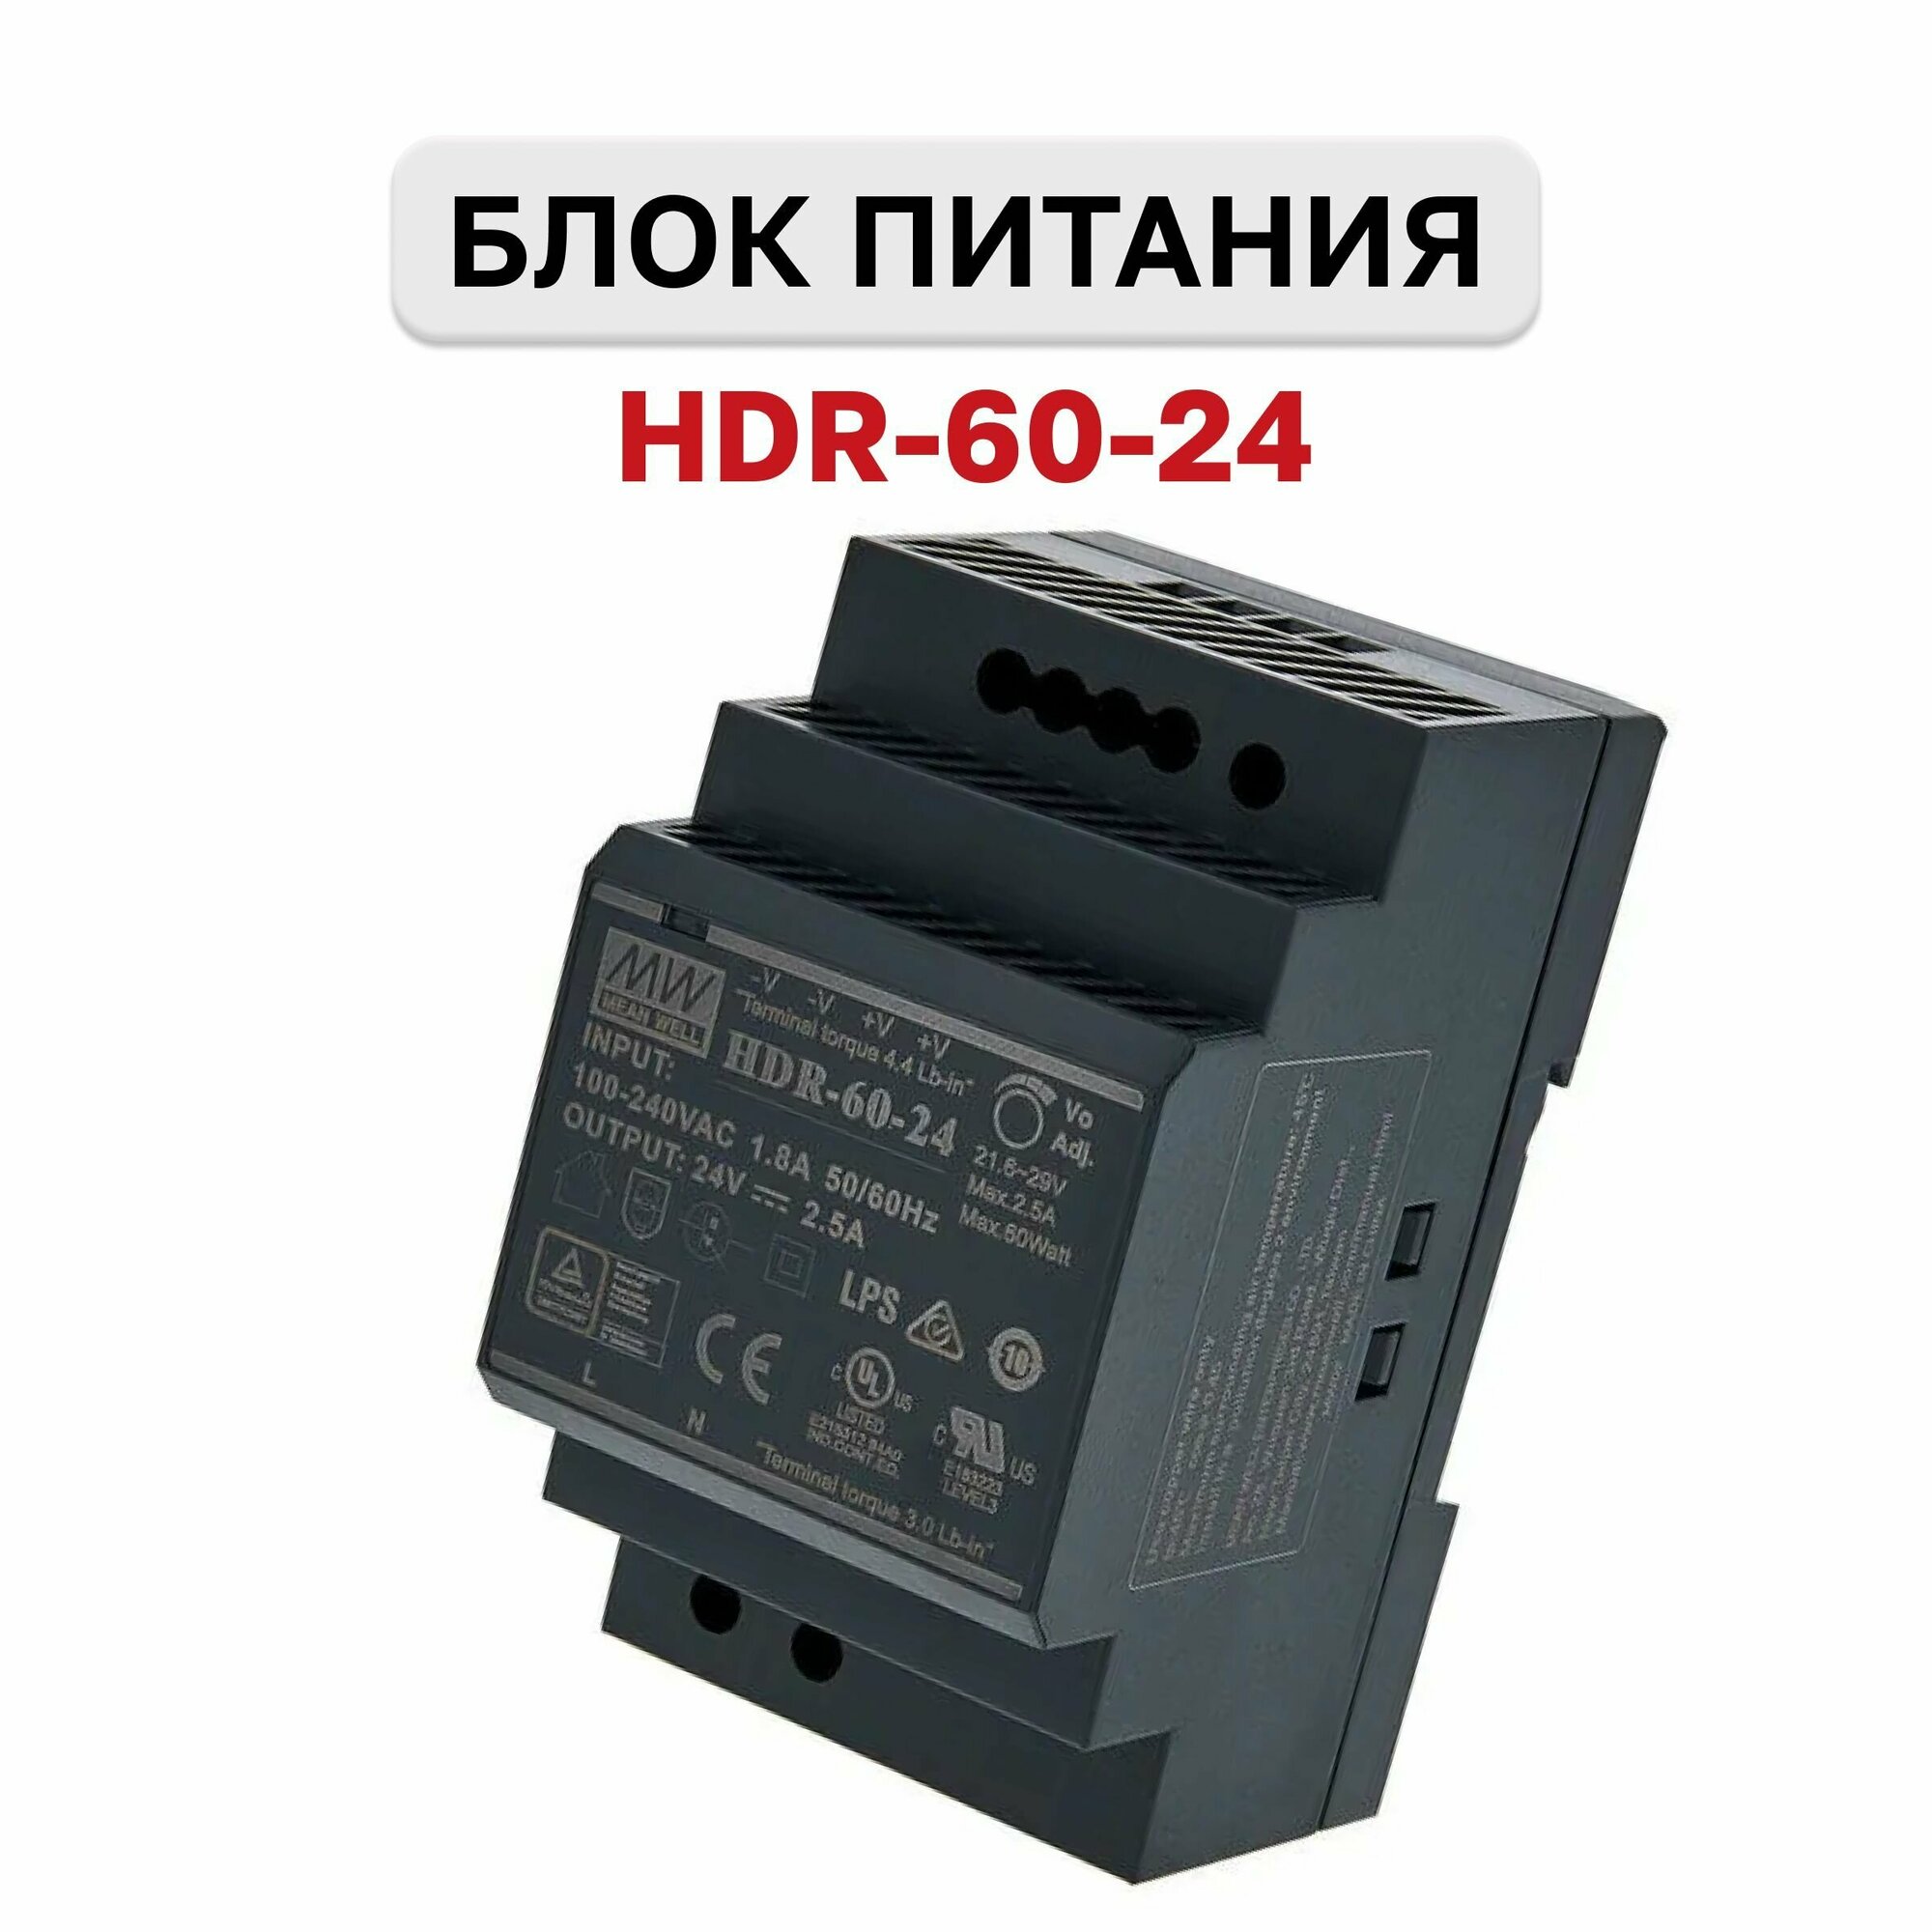 HDR-60-24, Блок питания, 24В, 2.5А, 60Вт